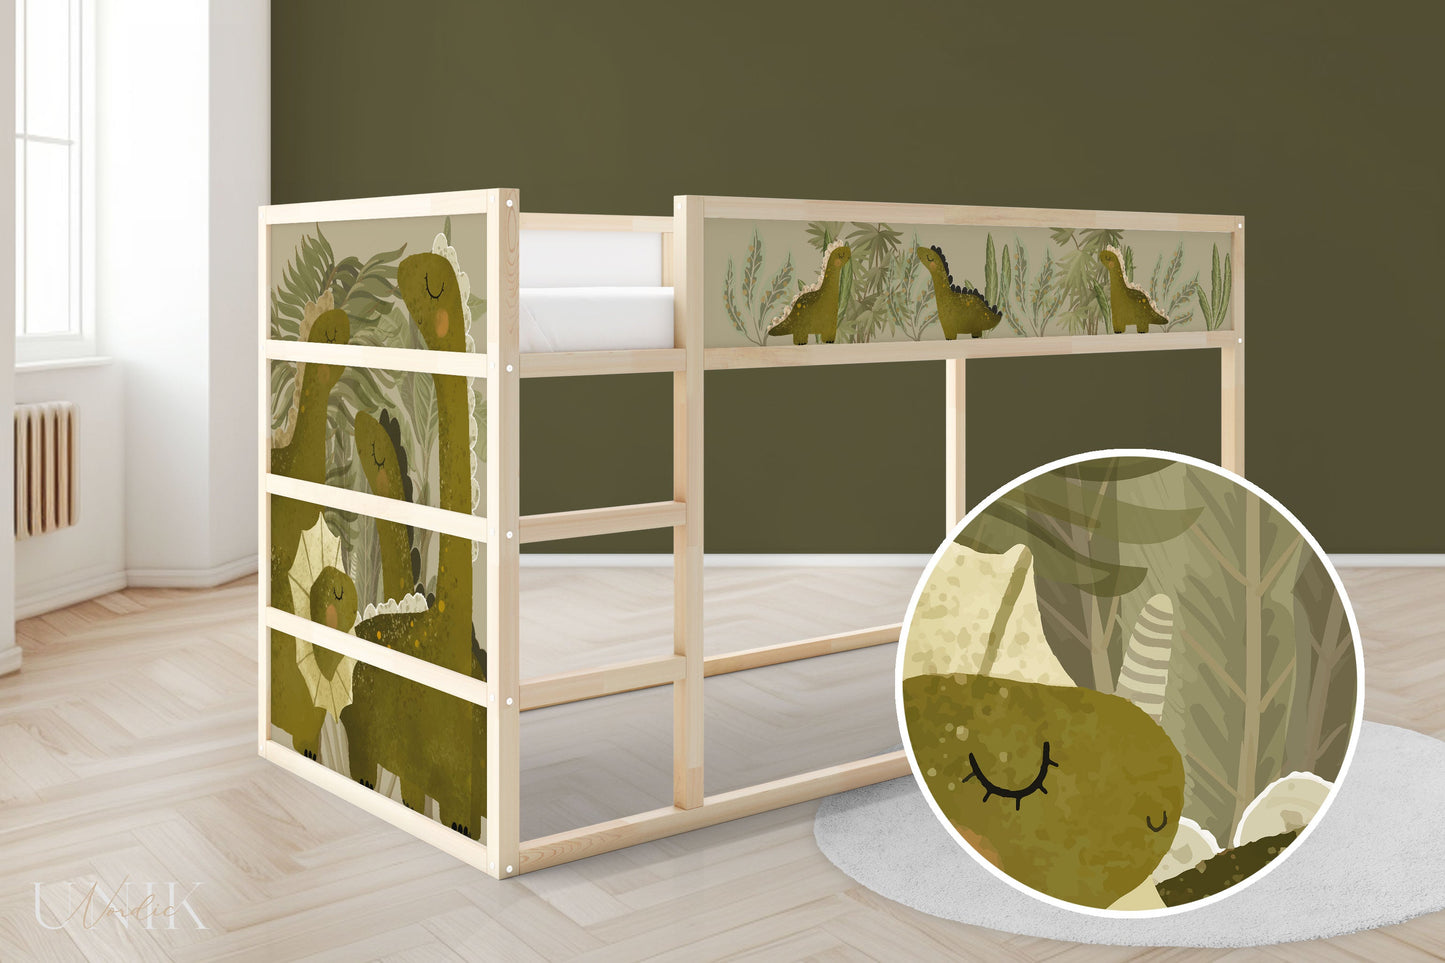 IKEA Kura Bed Sticker Set - Dinosaurs